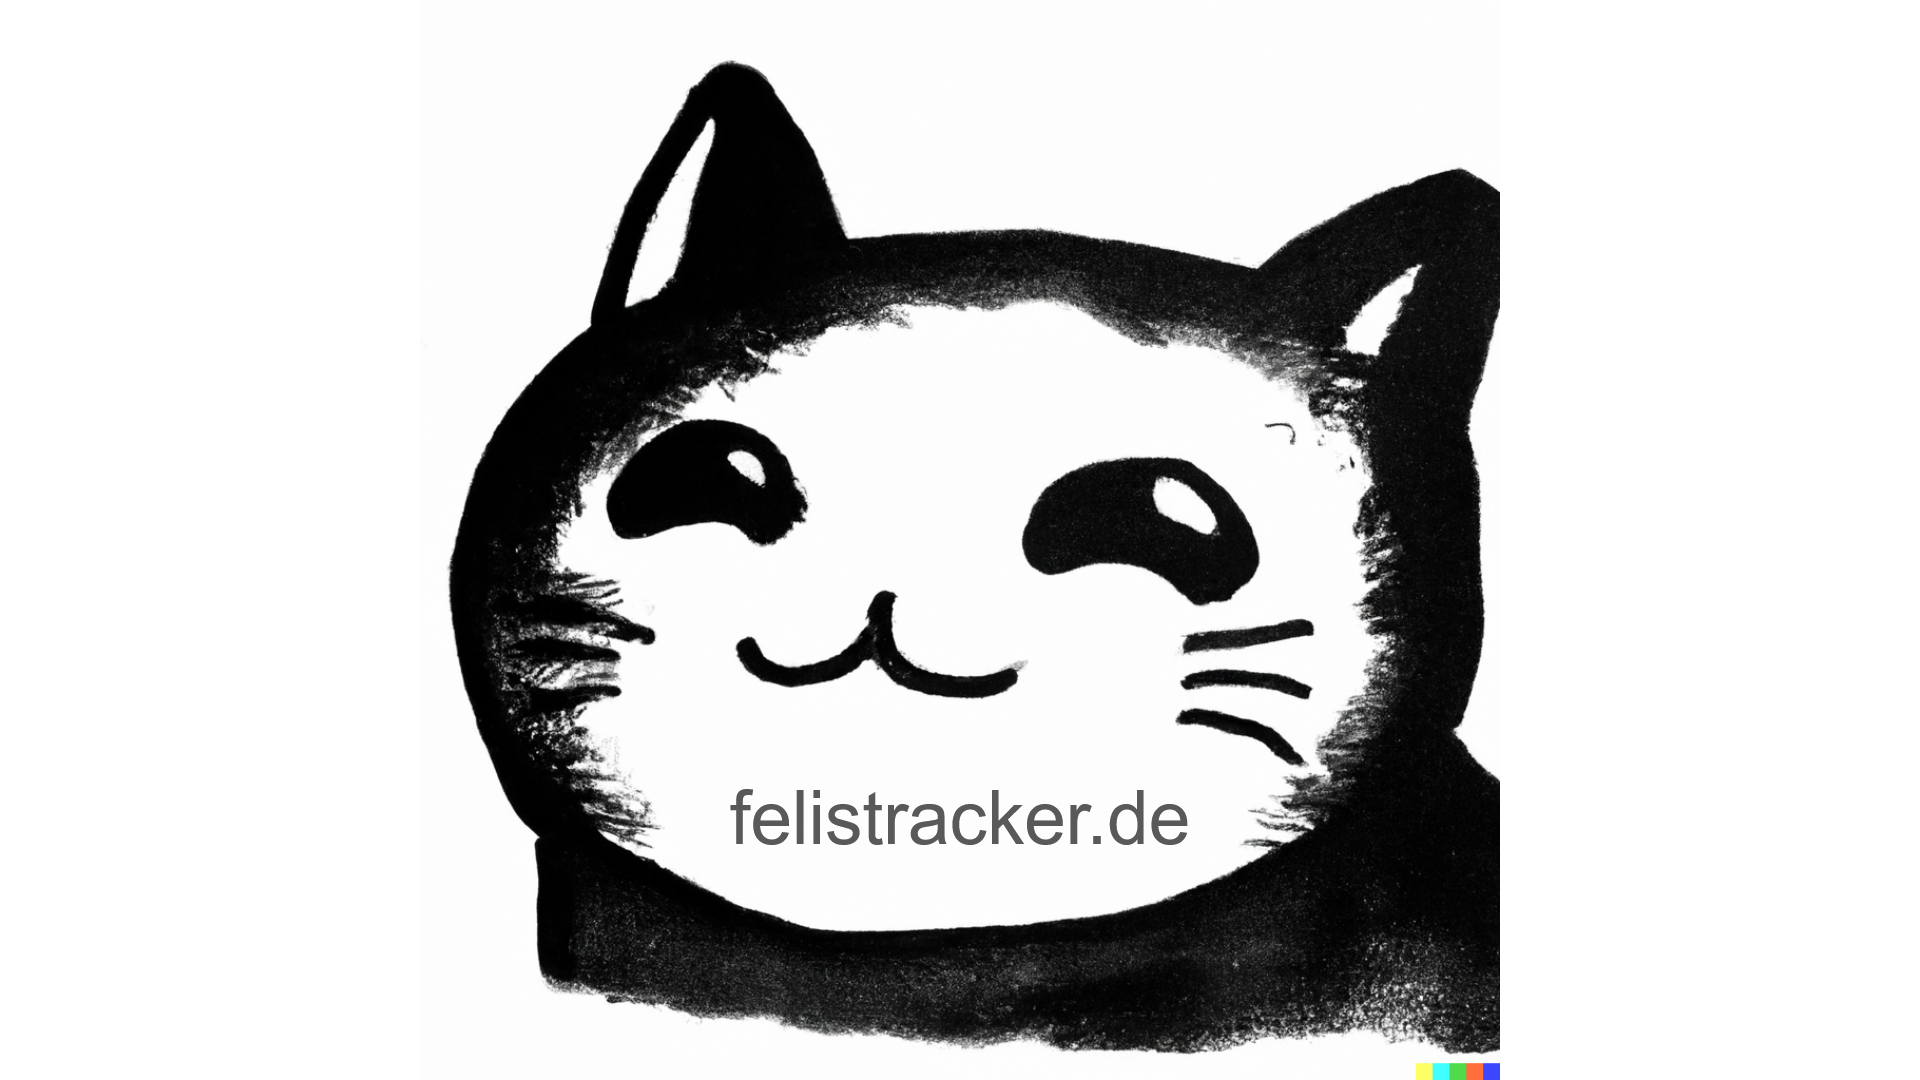 www.felistracker.de